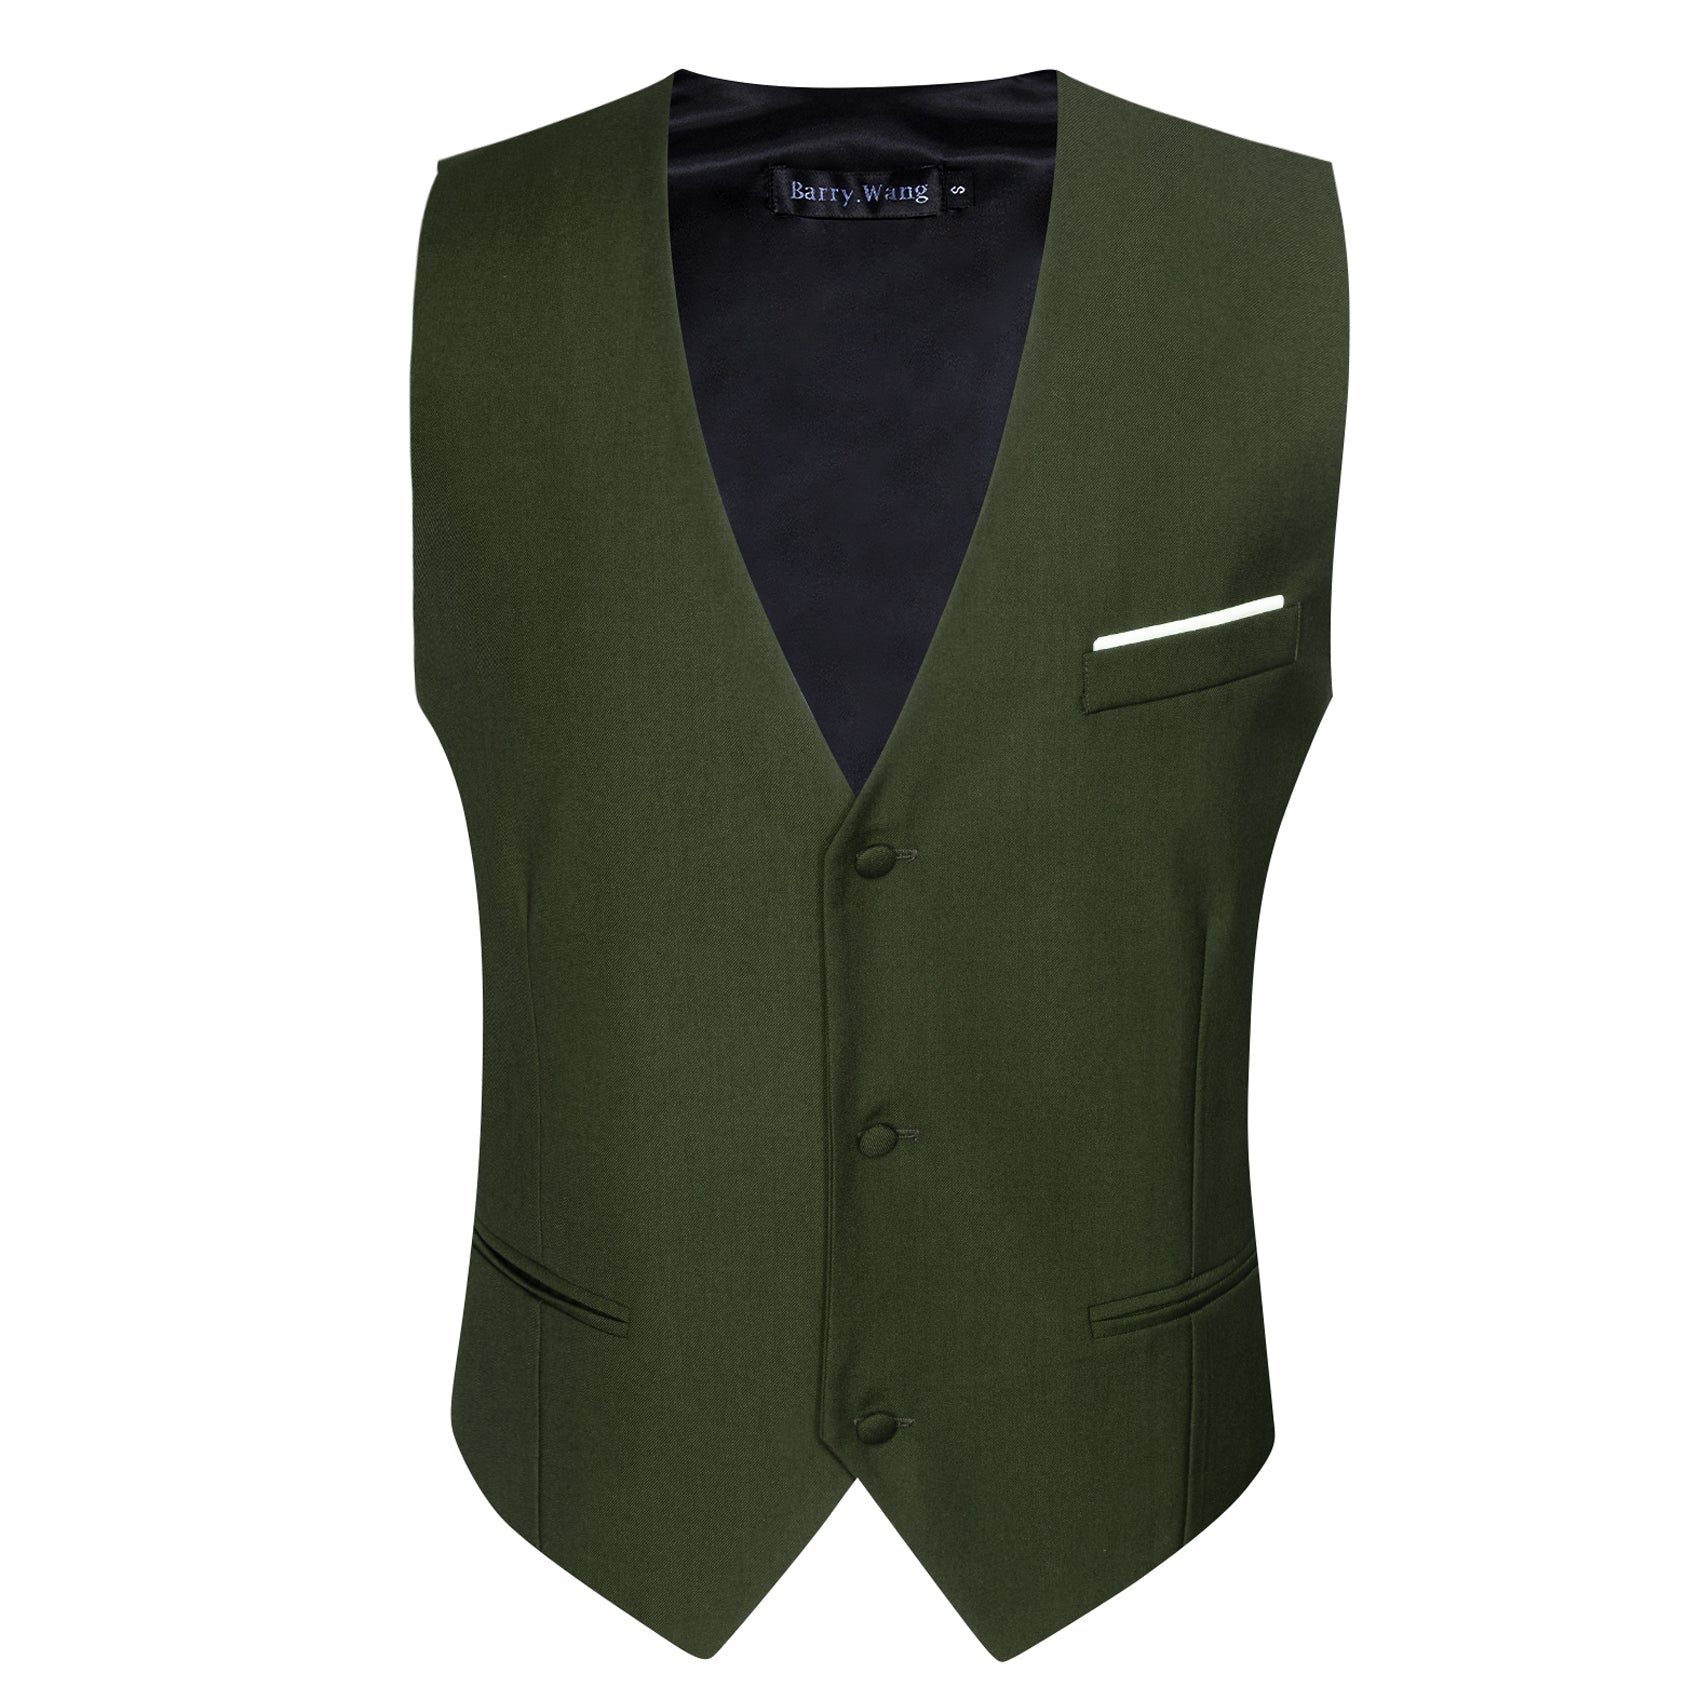 Barry.wang Men's Vest Olive Green Solid Necktie Bowtie Hanky Cufflinks Vest Set